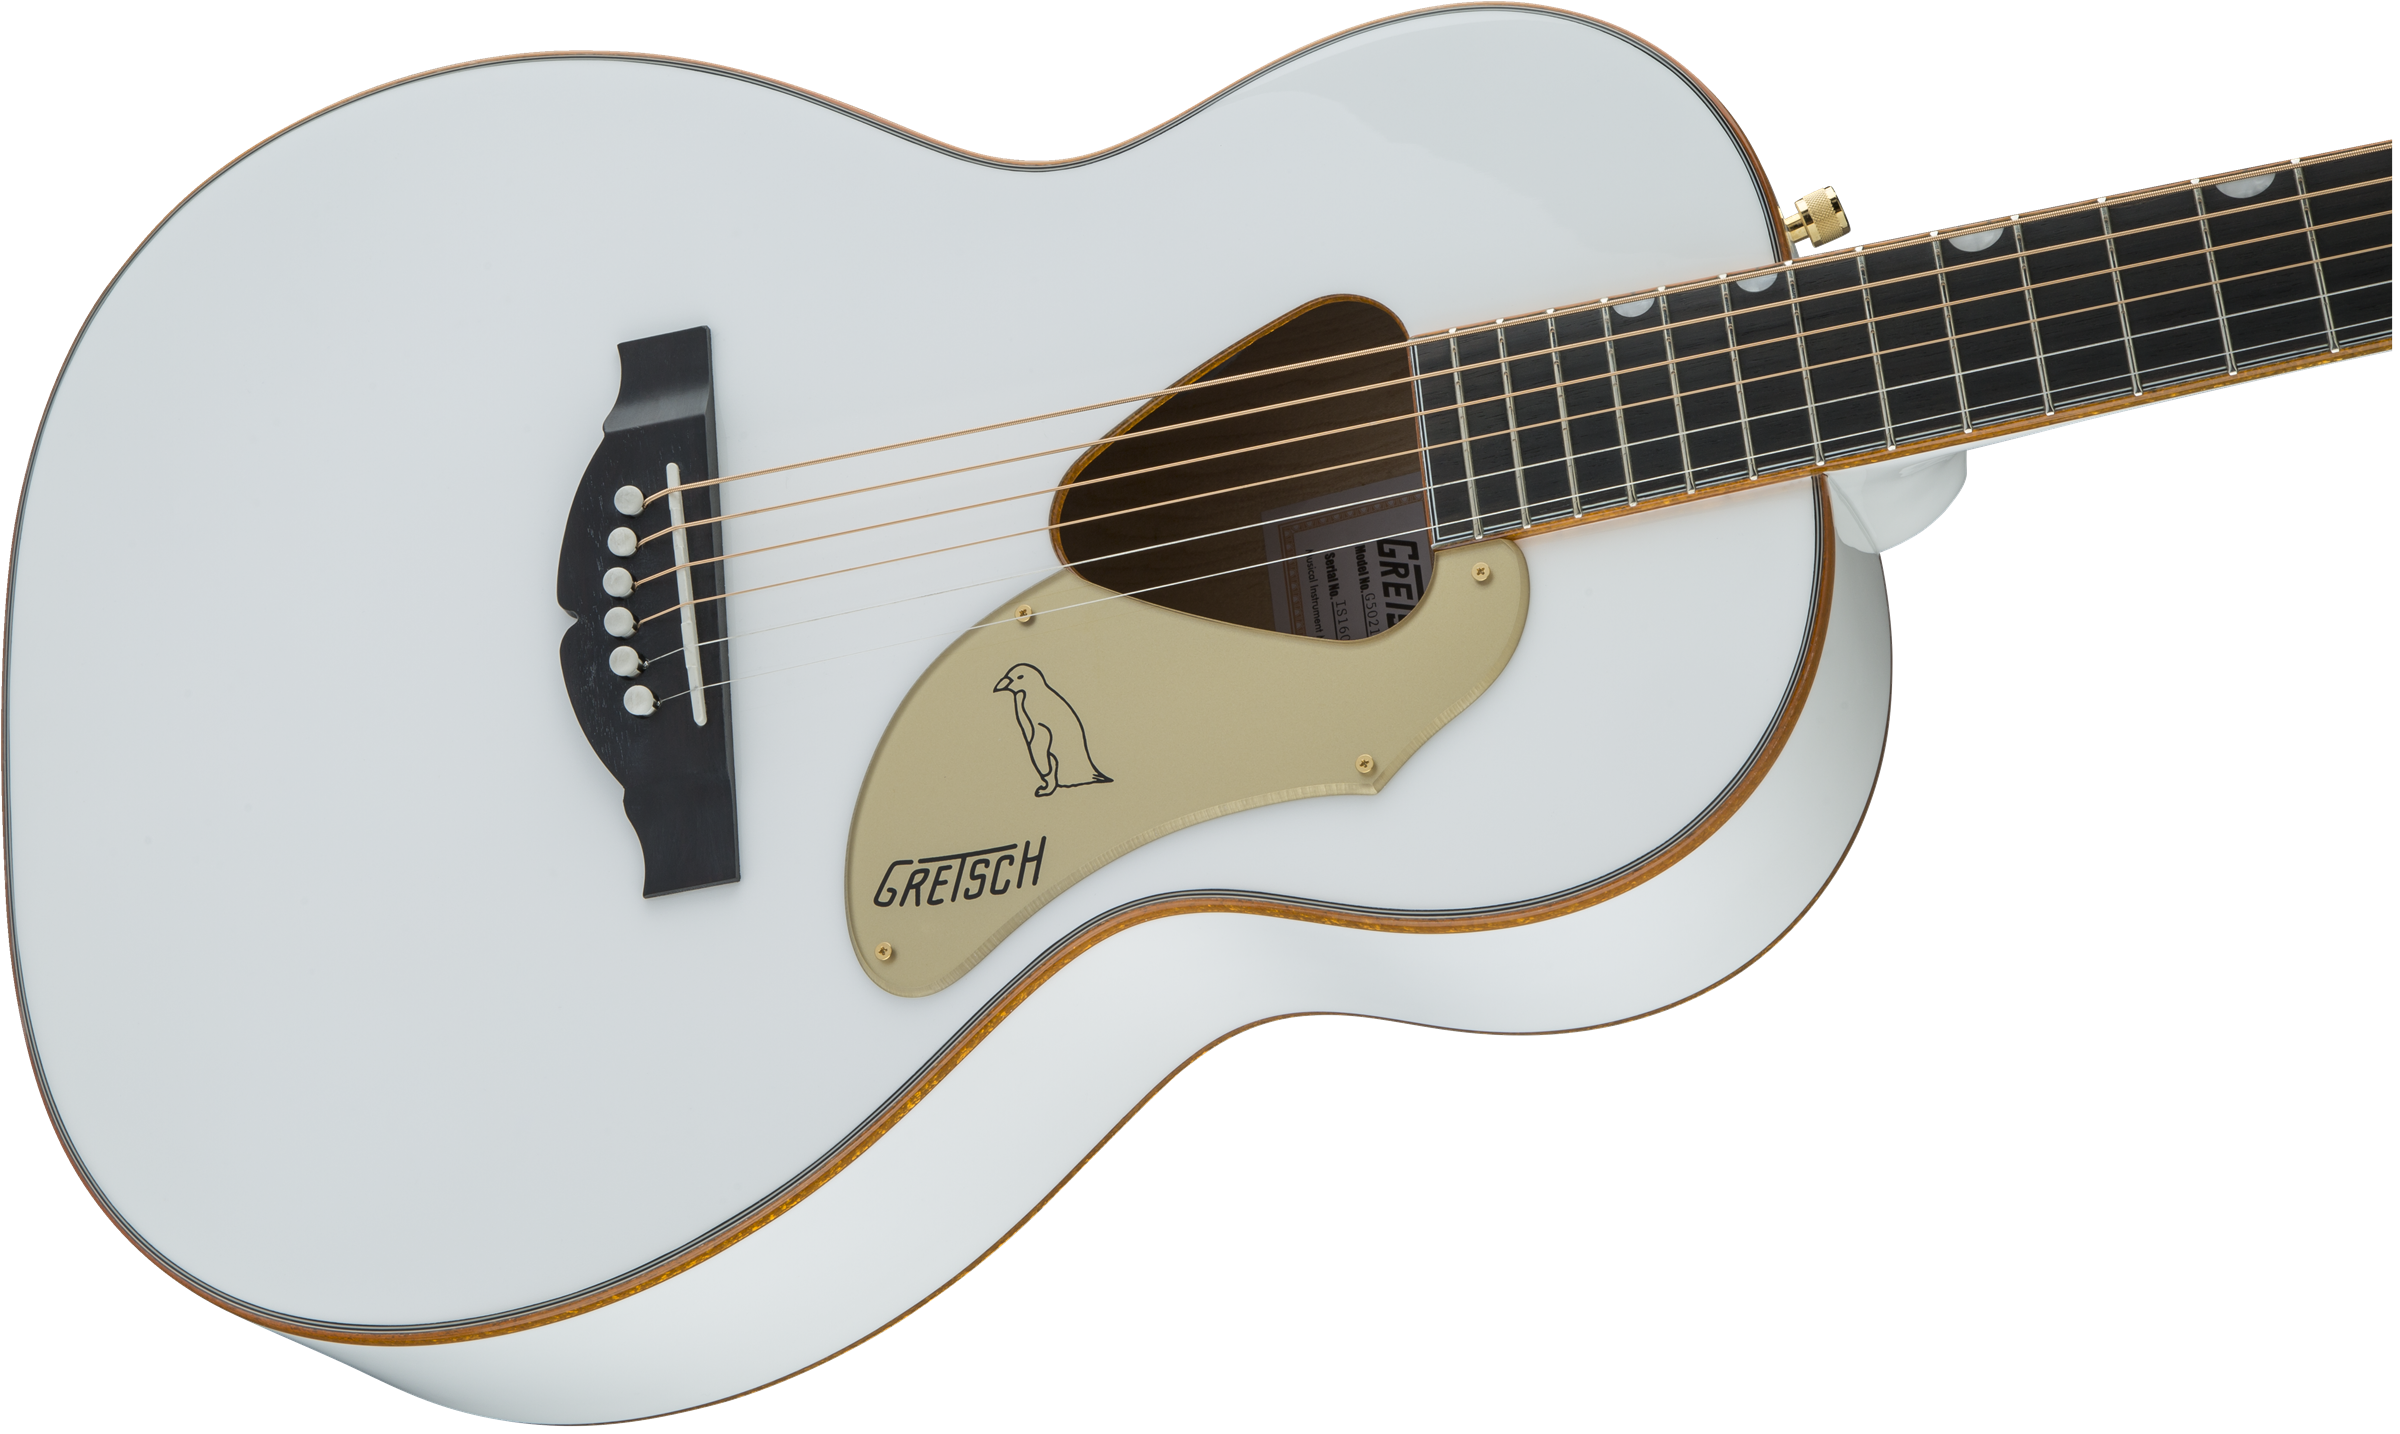 Gretsch G5021wpe Rancher Penguin Parlor Epicea Erable Lau - White - Guitare Electro Acoustique - Variation 3